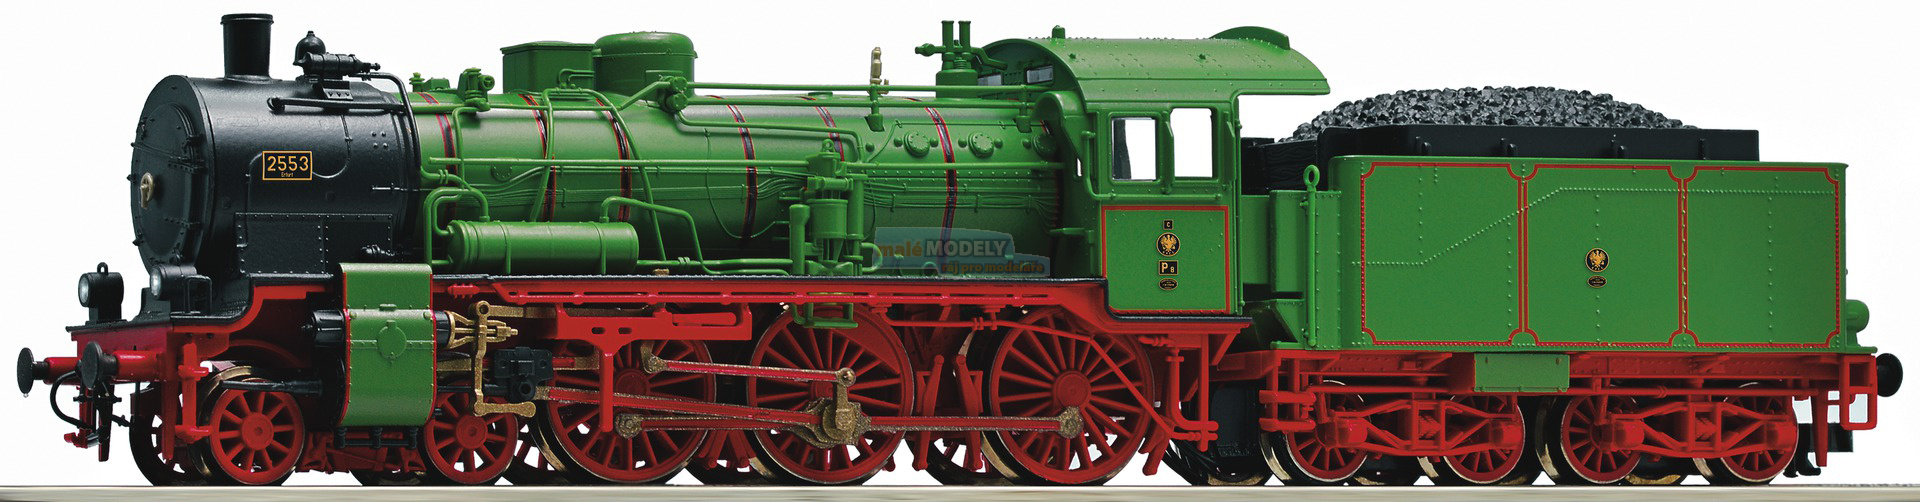 Parní lokomotiva P8 -Erfurt 2553-